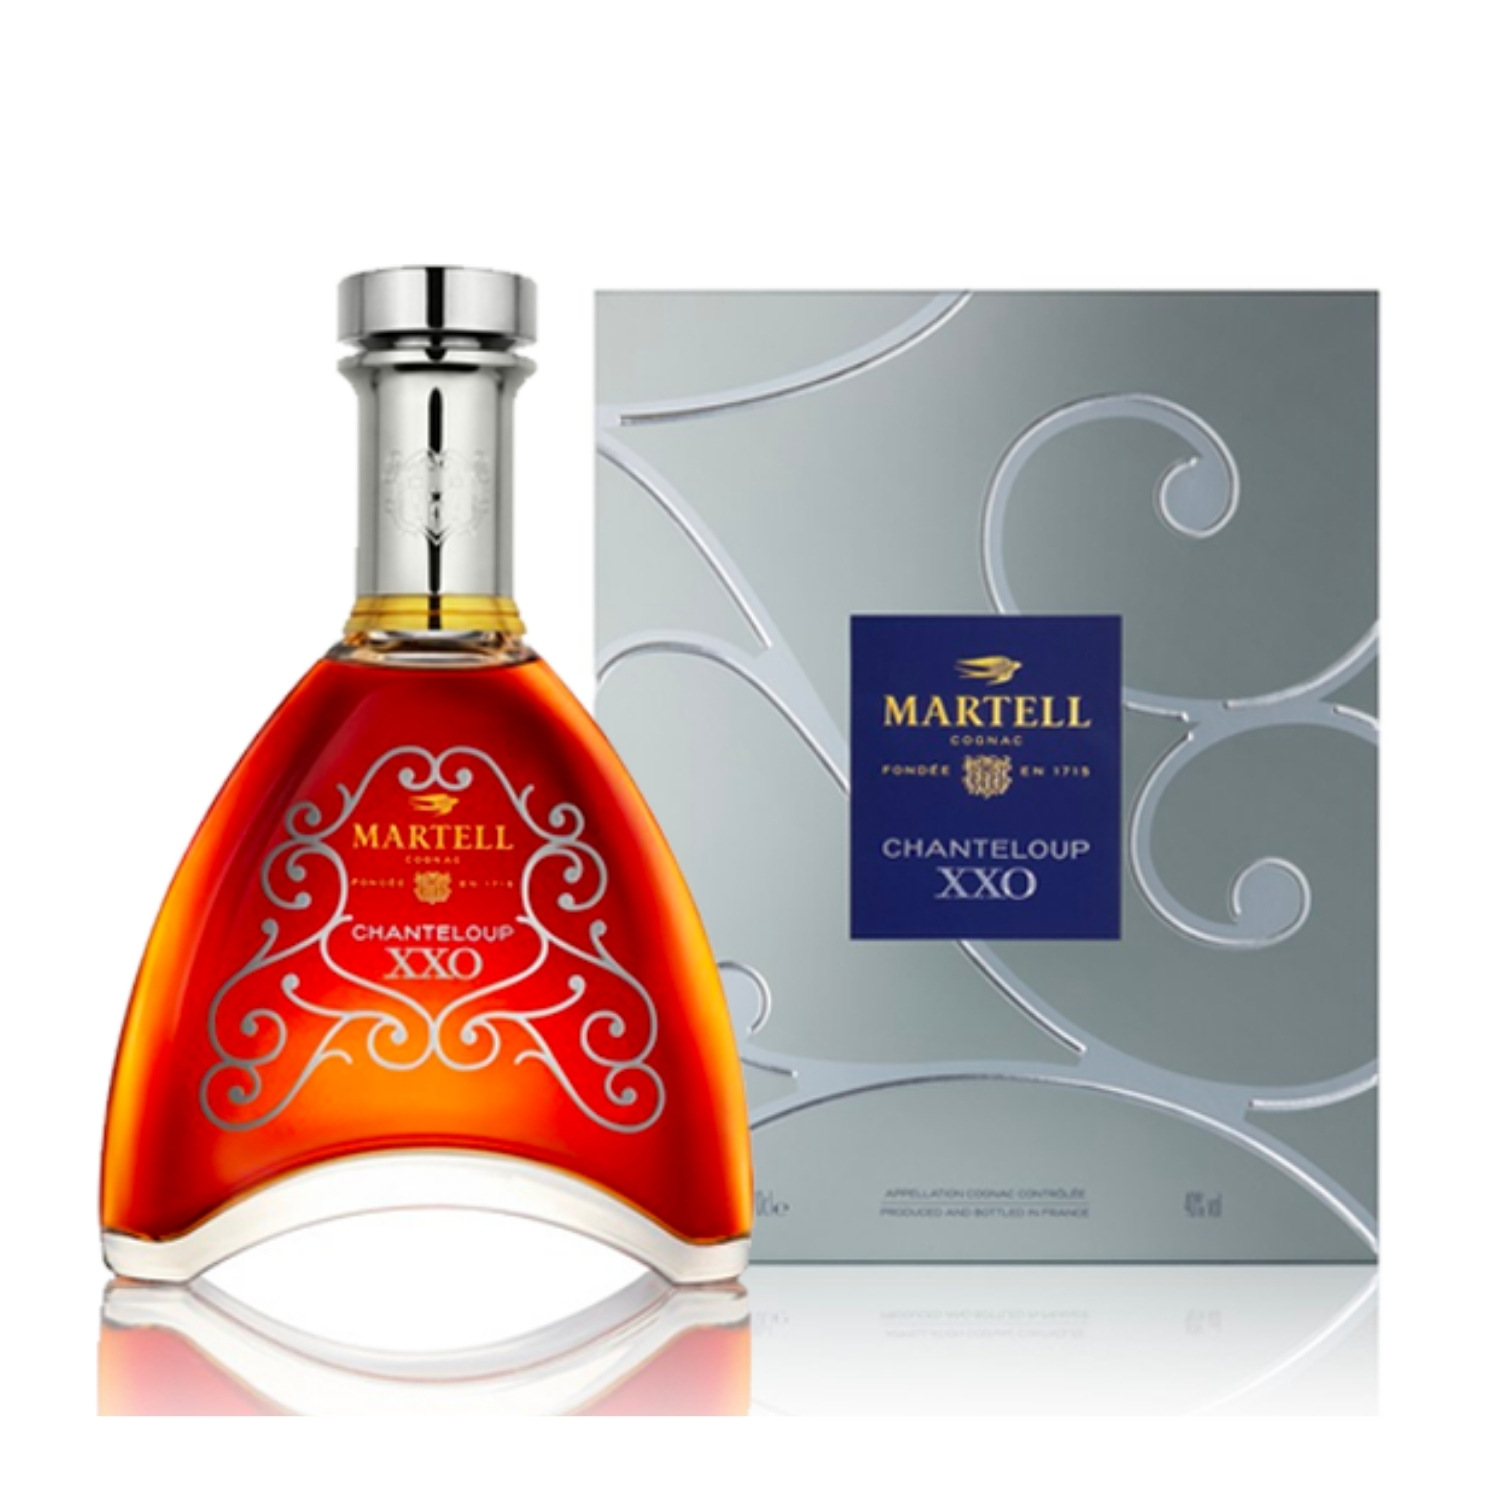 Cognac MARTELL Chanteloup XXO